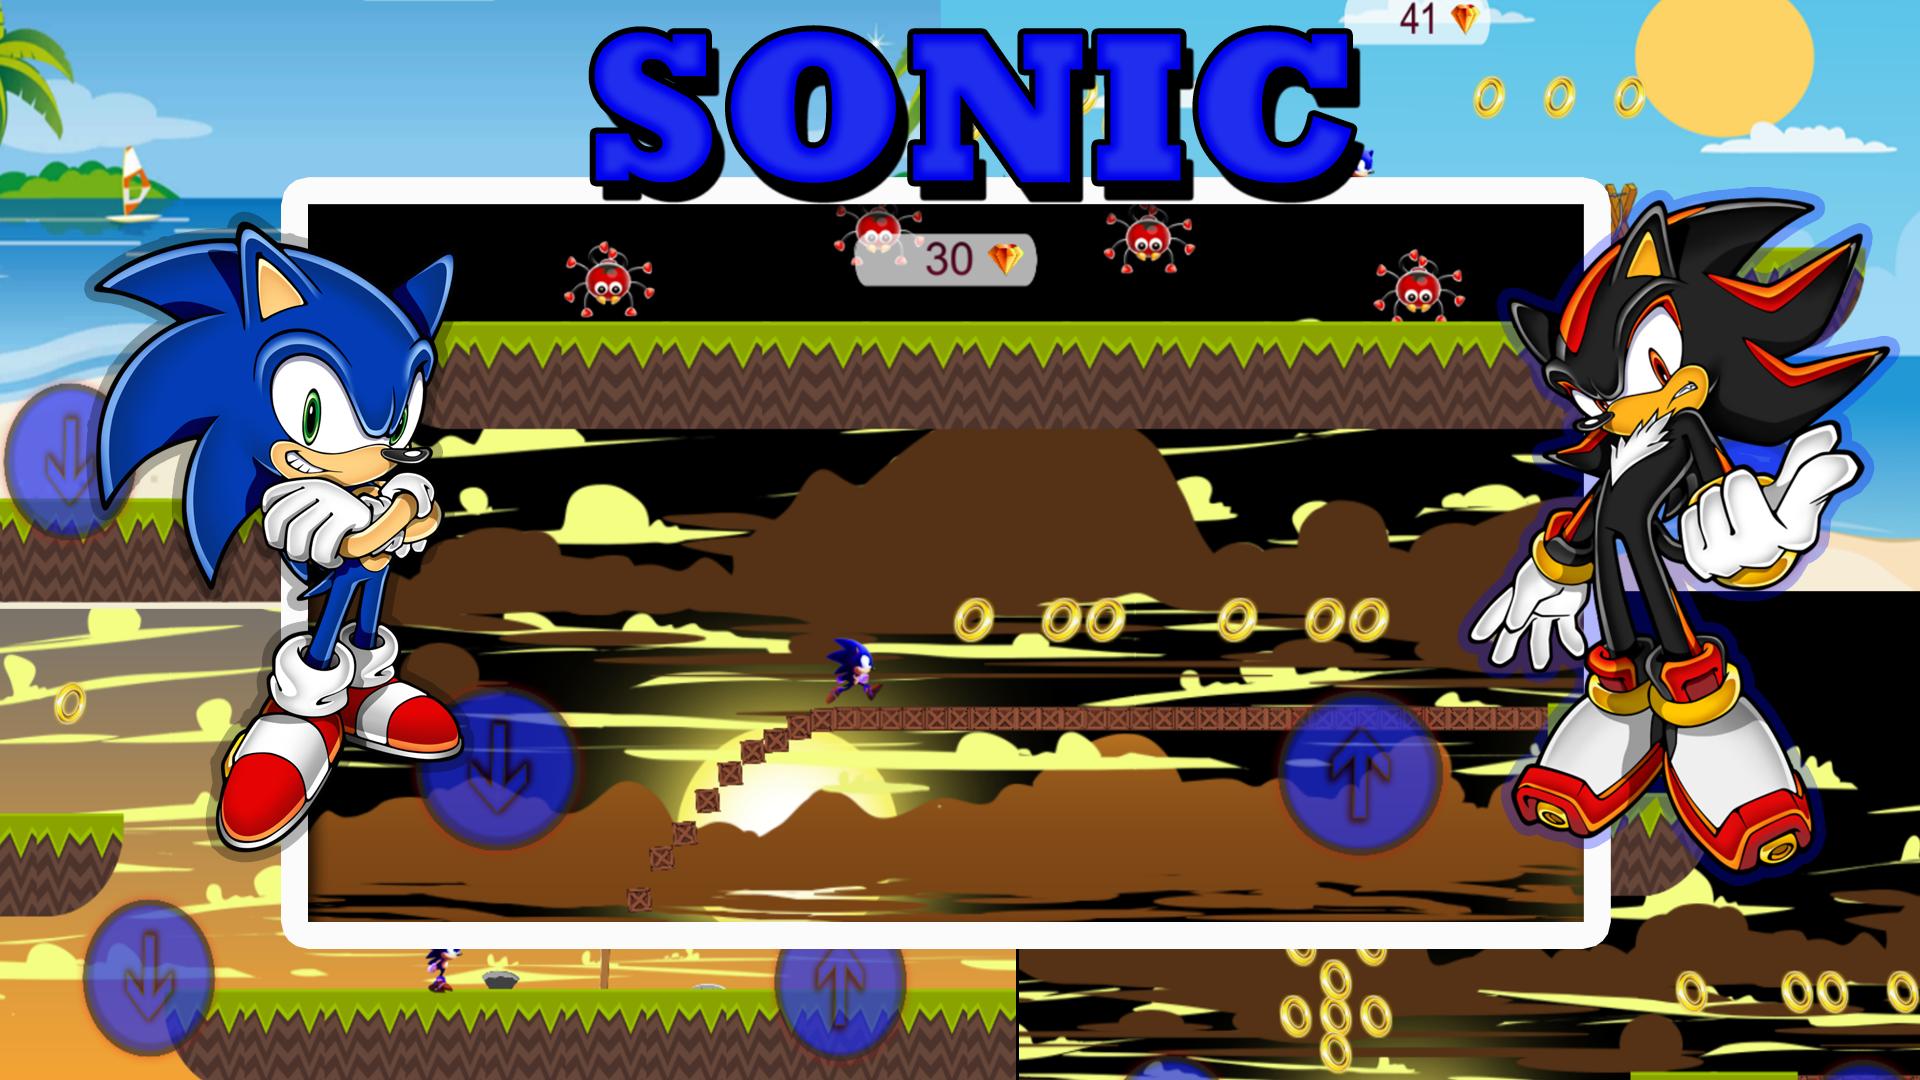 Sonic бег и гонки игра. Соник раннер. Соник Раннерс адвенчер. Соник бежит игра. Игры в стиле бега Соник.